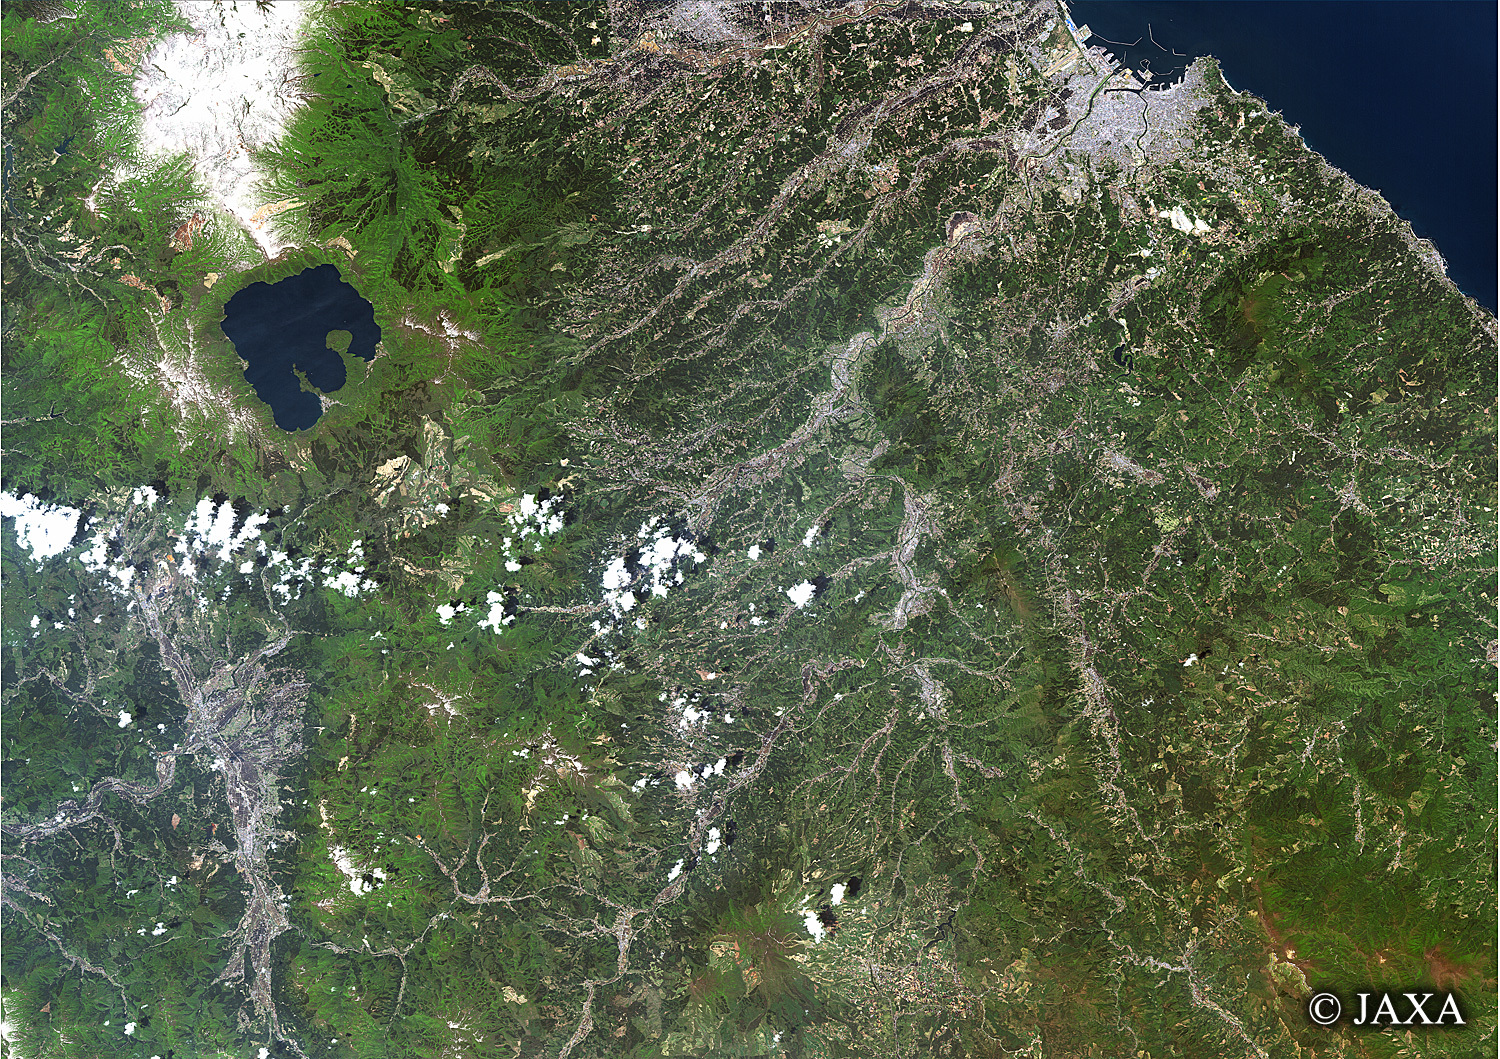 だいちから見た日本の都市 十和田湖:衛星画像